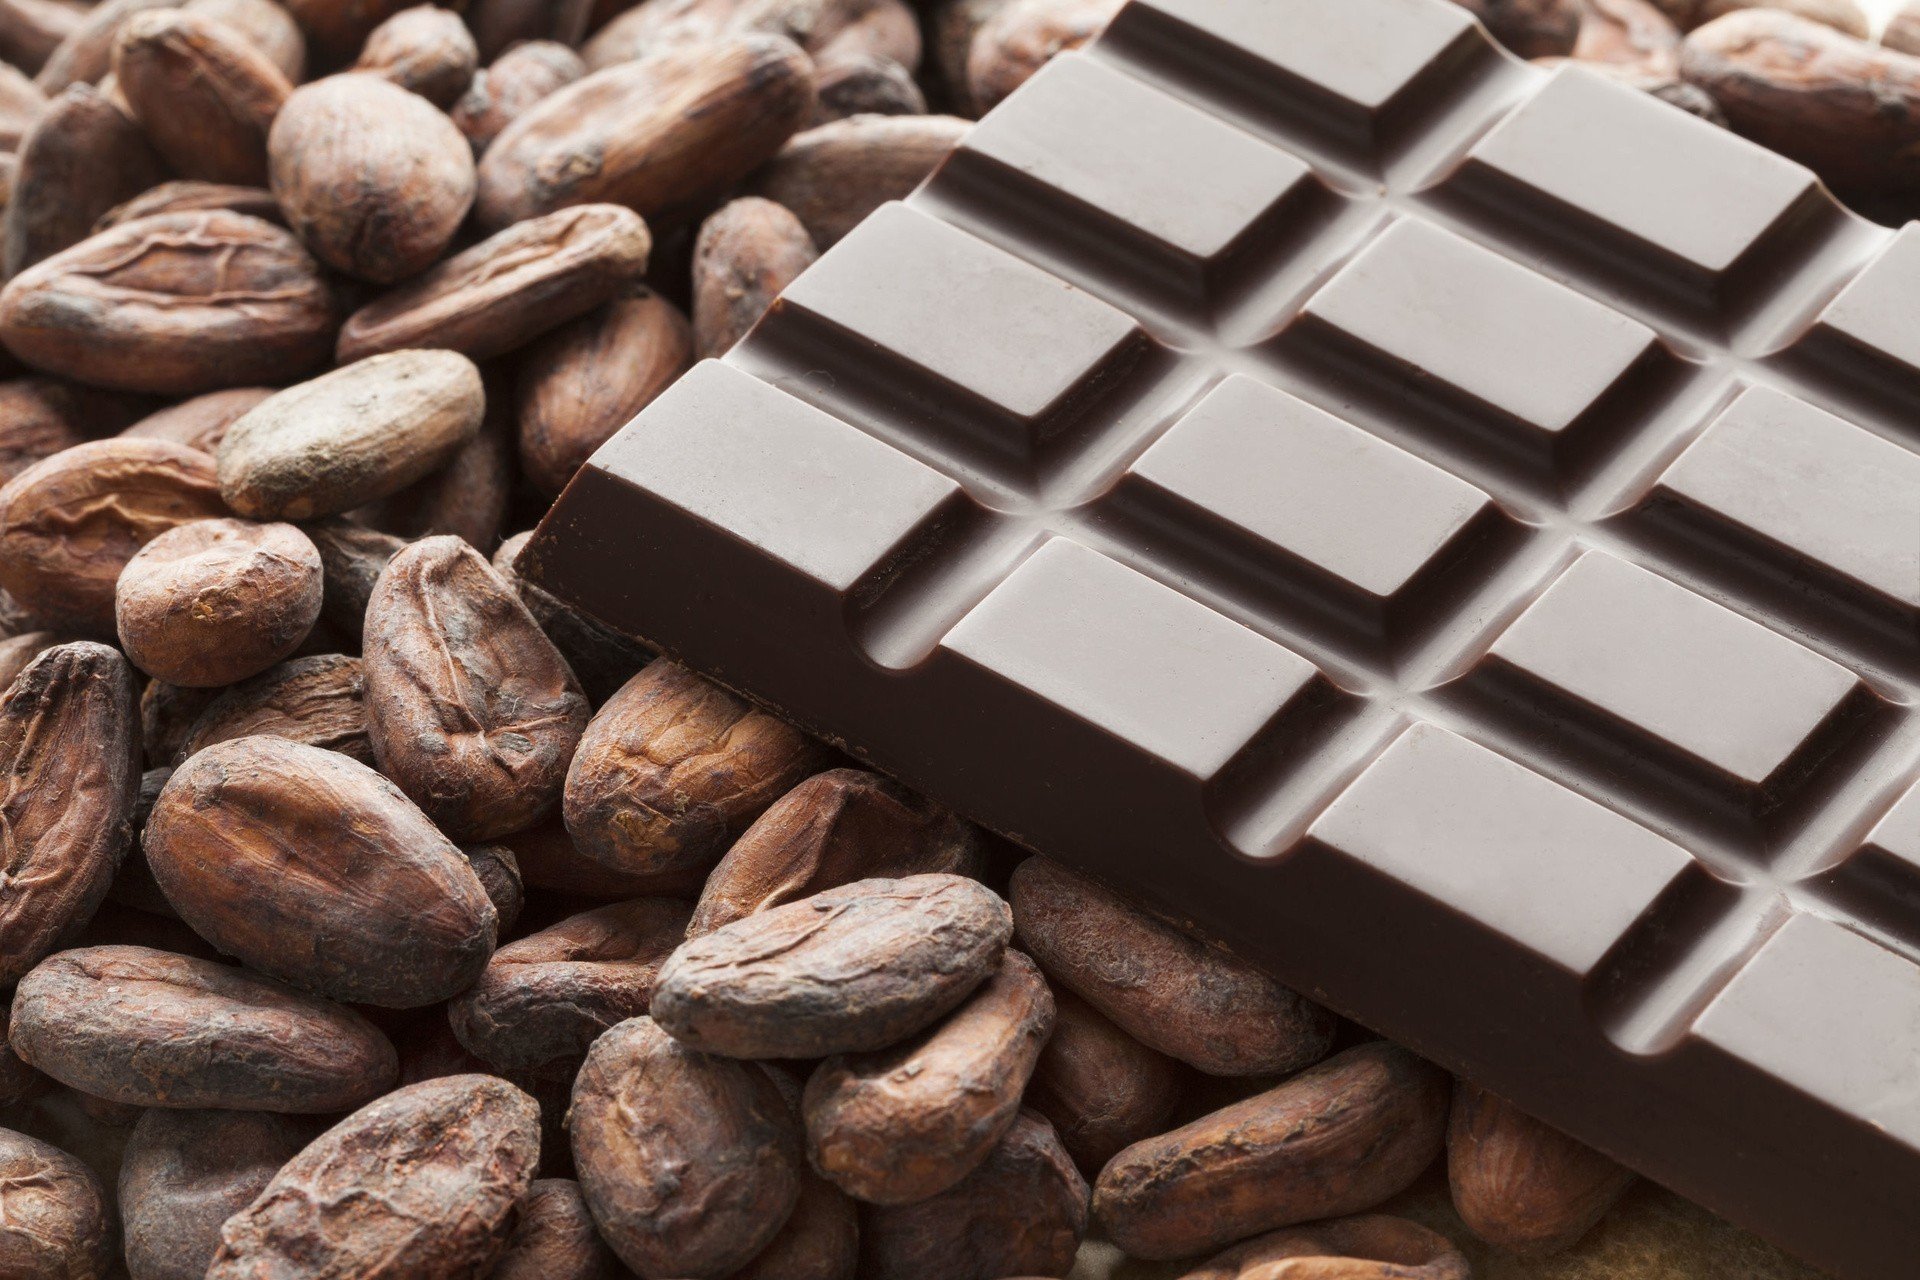 Czekolada – właściwości, historia, produkcja i wartości odżywcze. Czy  czekolada jest zdrowa? | Strona Zdrowia